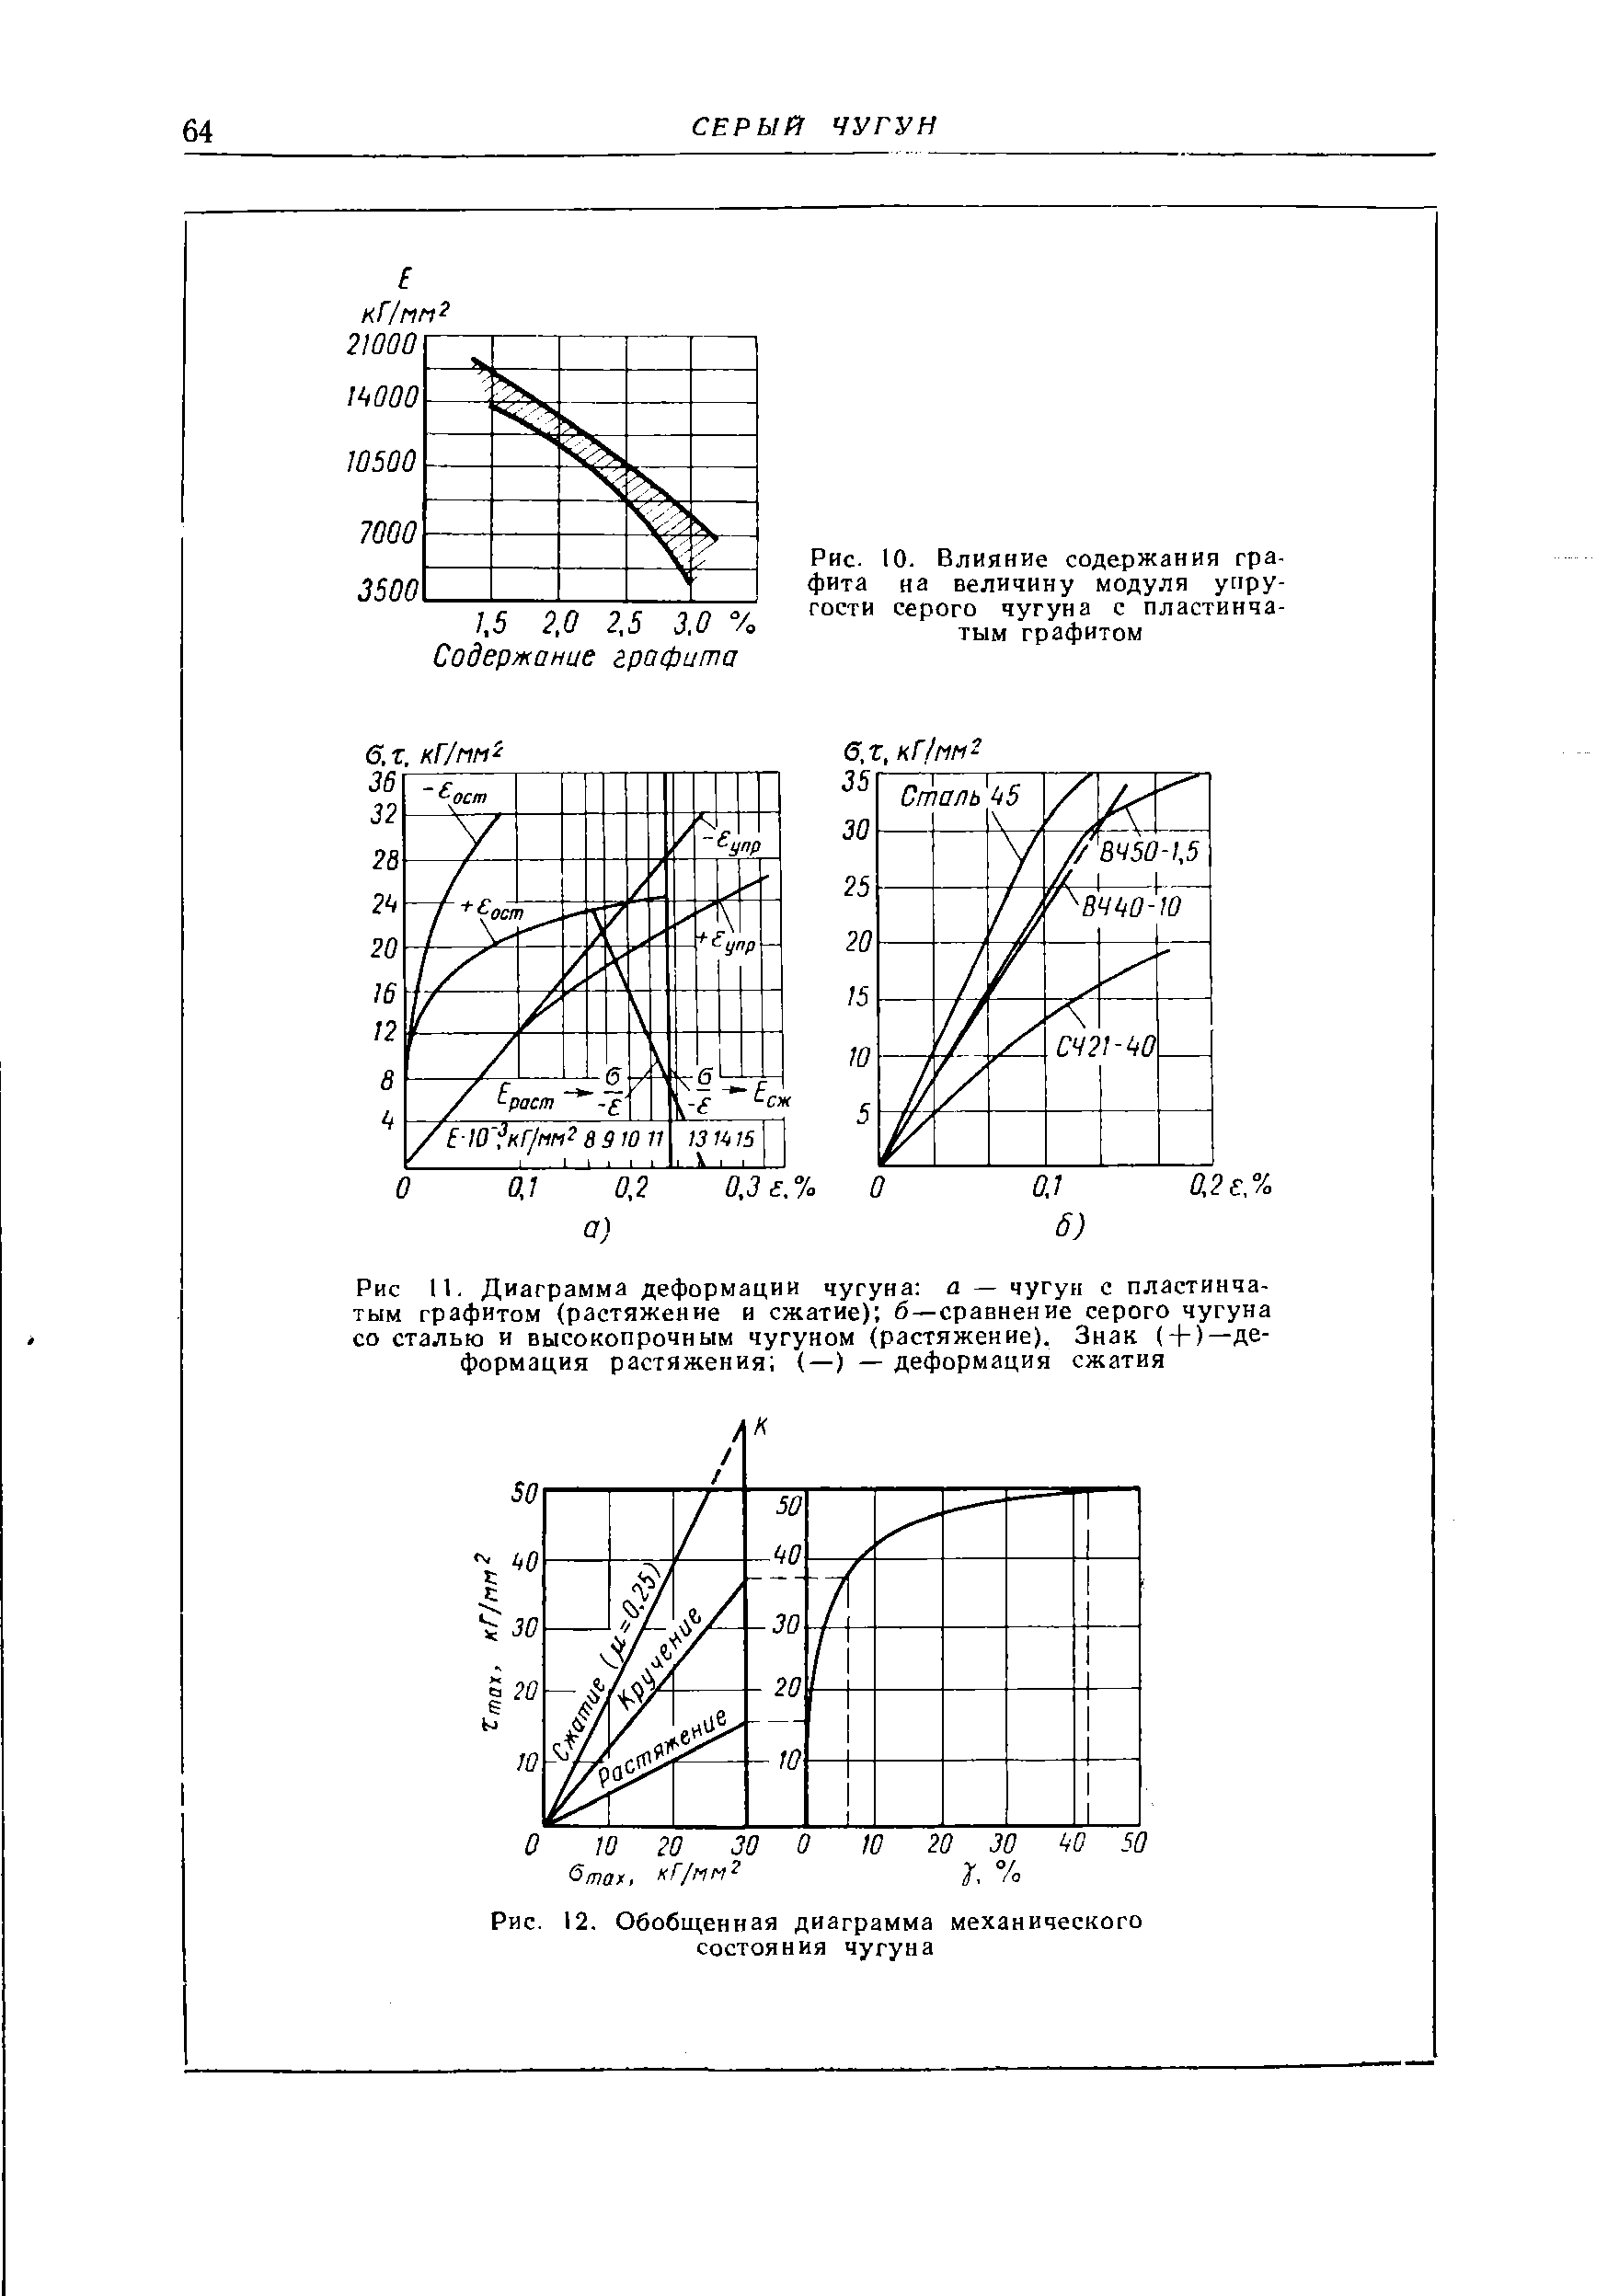 Рис. 12. Обобщенная диаграмма механического состояния чугуна
